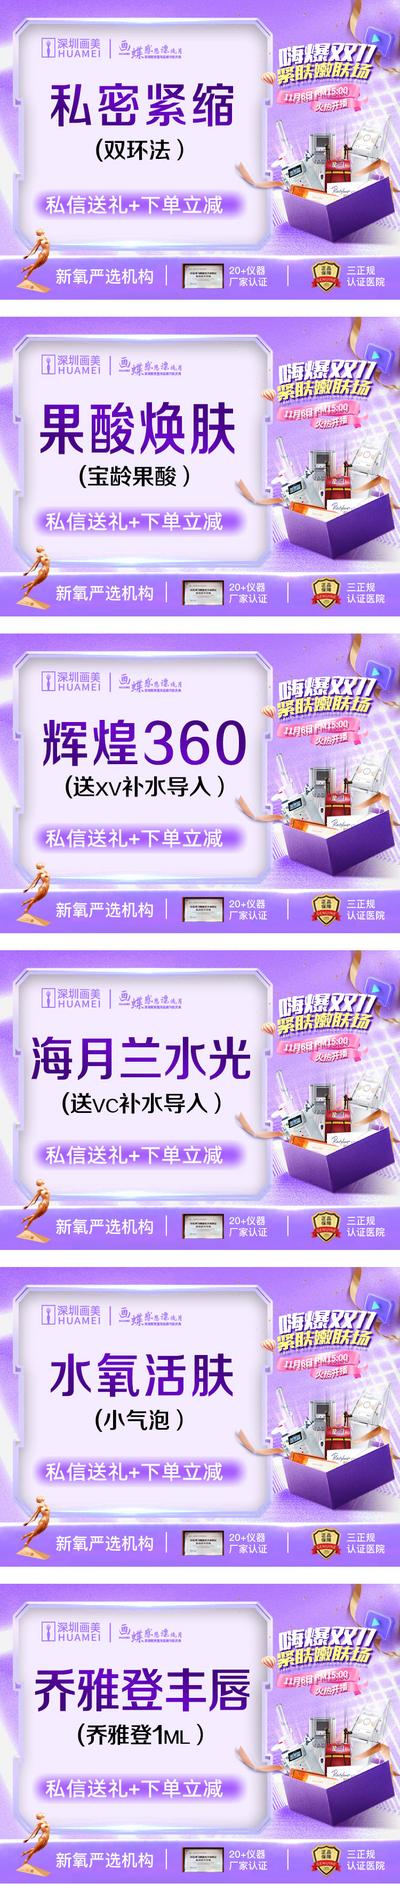 【南门网】广告 海报 电商 banner 美团 头图 双十一